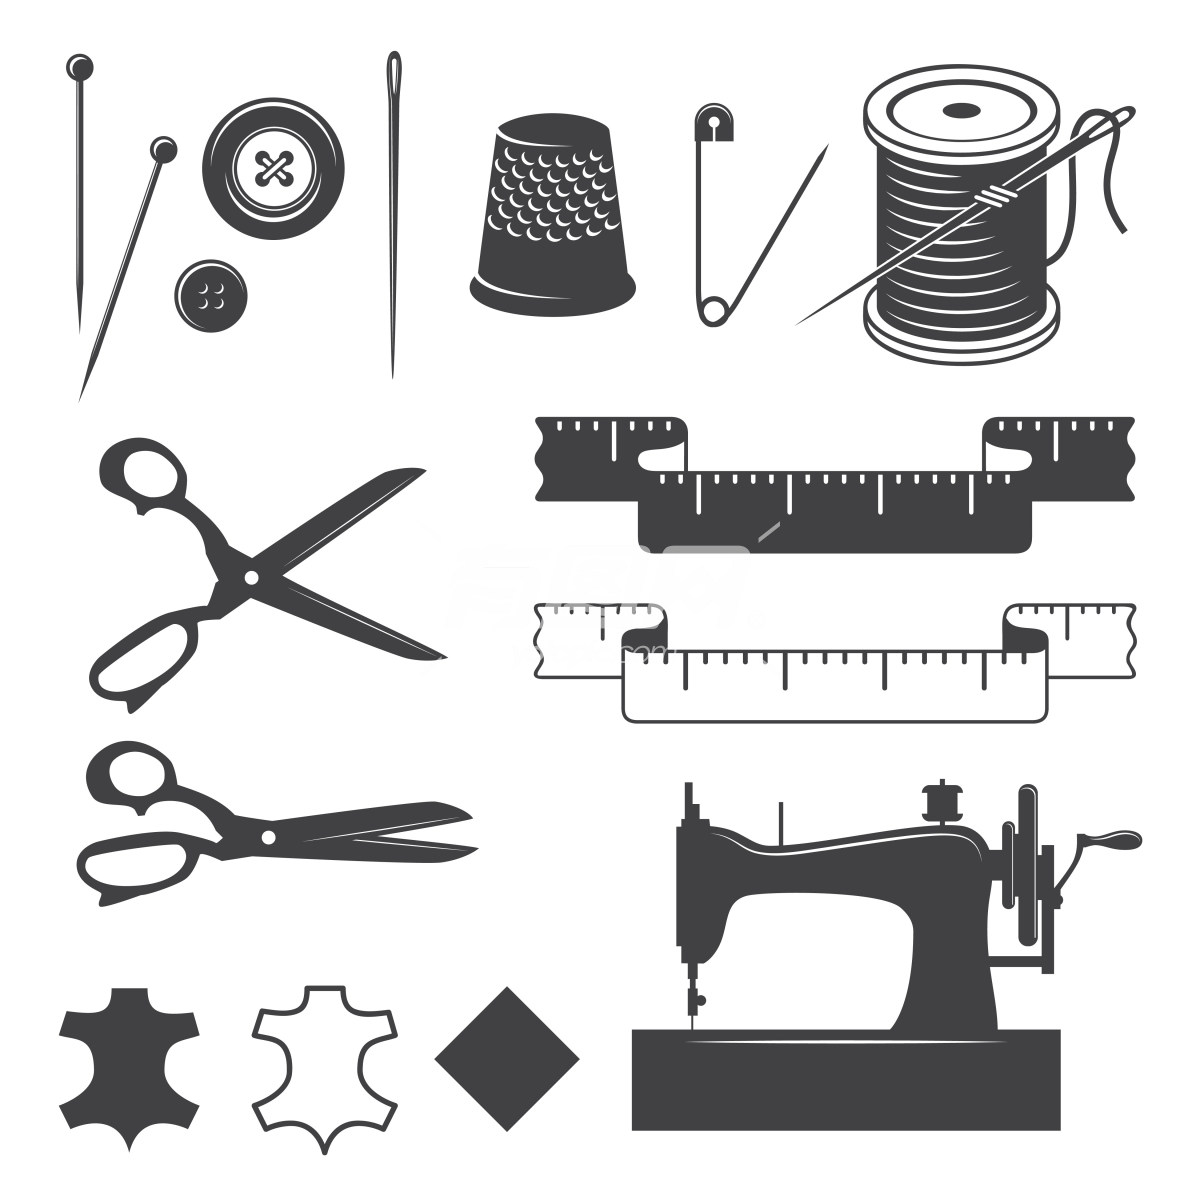 缝纫机相关工具